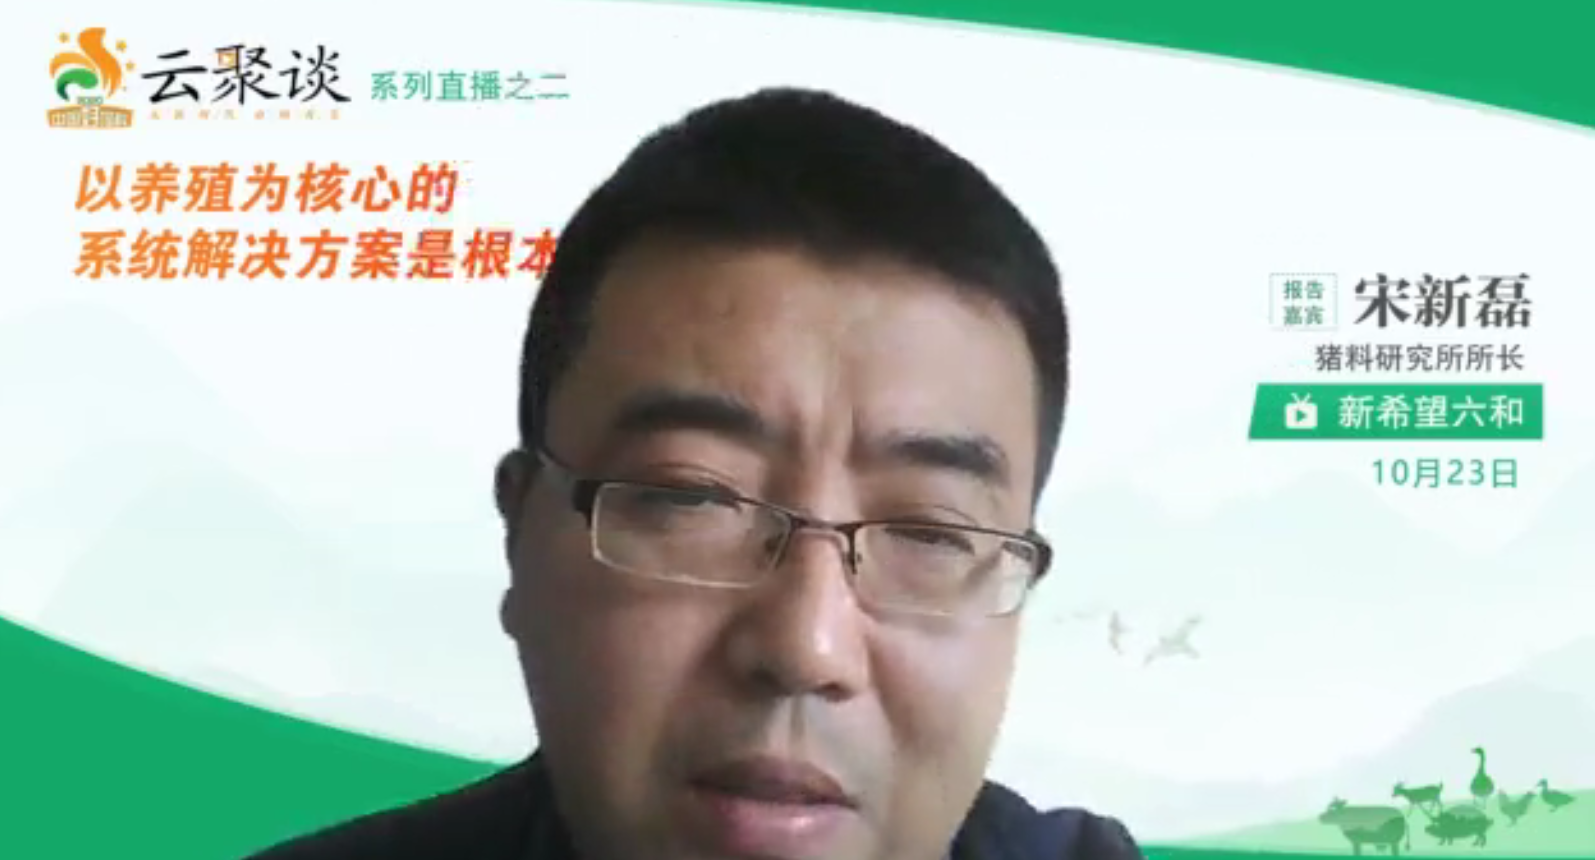 　　新希望六和股份有限公司猪料高级营养师宋新磊博士作分享